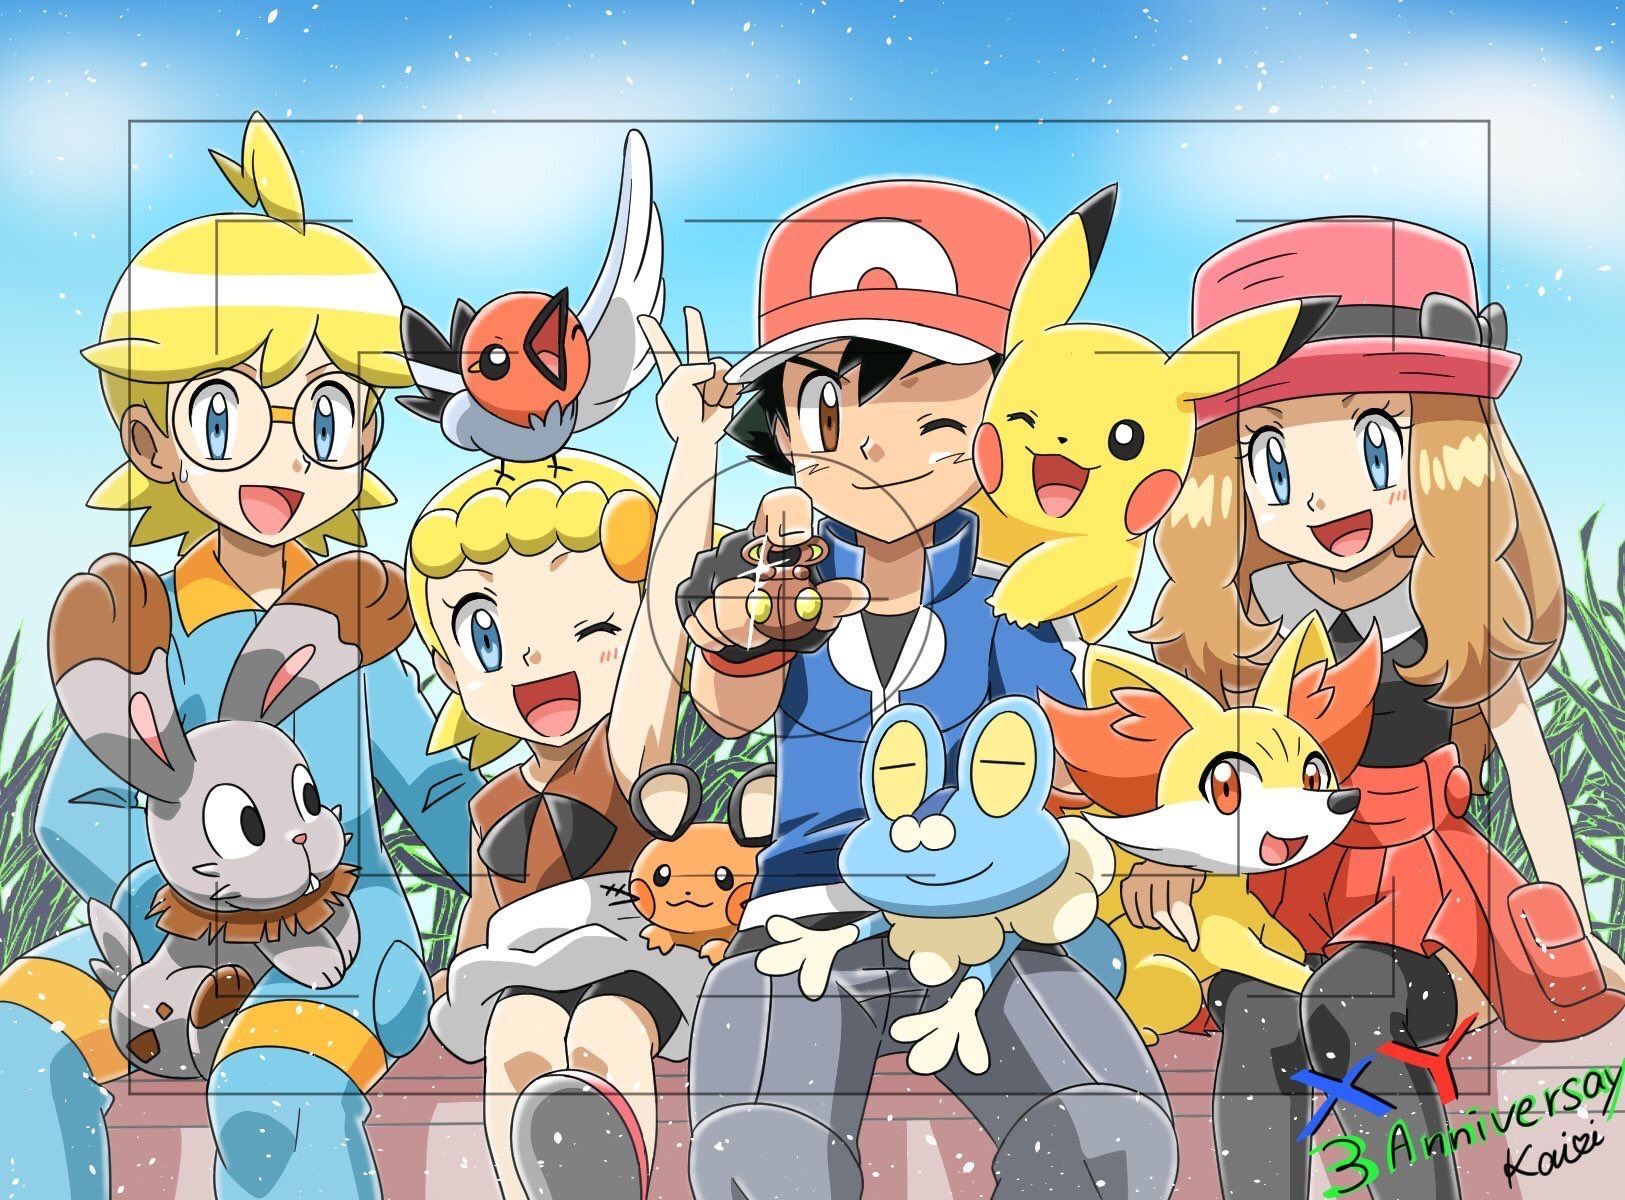 Pokémon XYZ kalos family. ASH, Serena, Clemont, and Bonnie. Pokemon, Hình vui, Nhật ký nghệ thuật